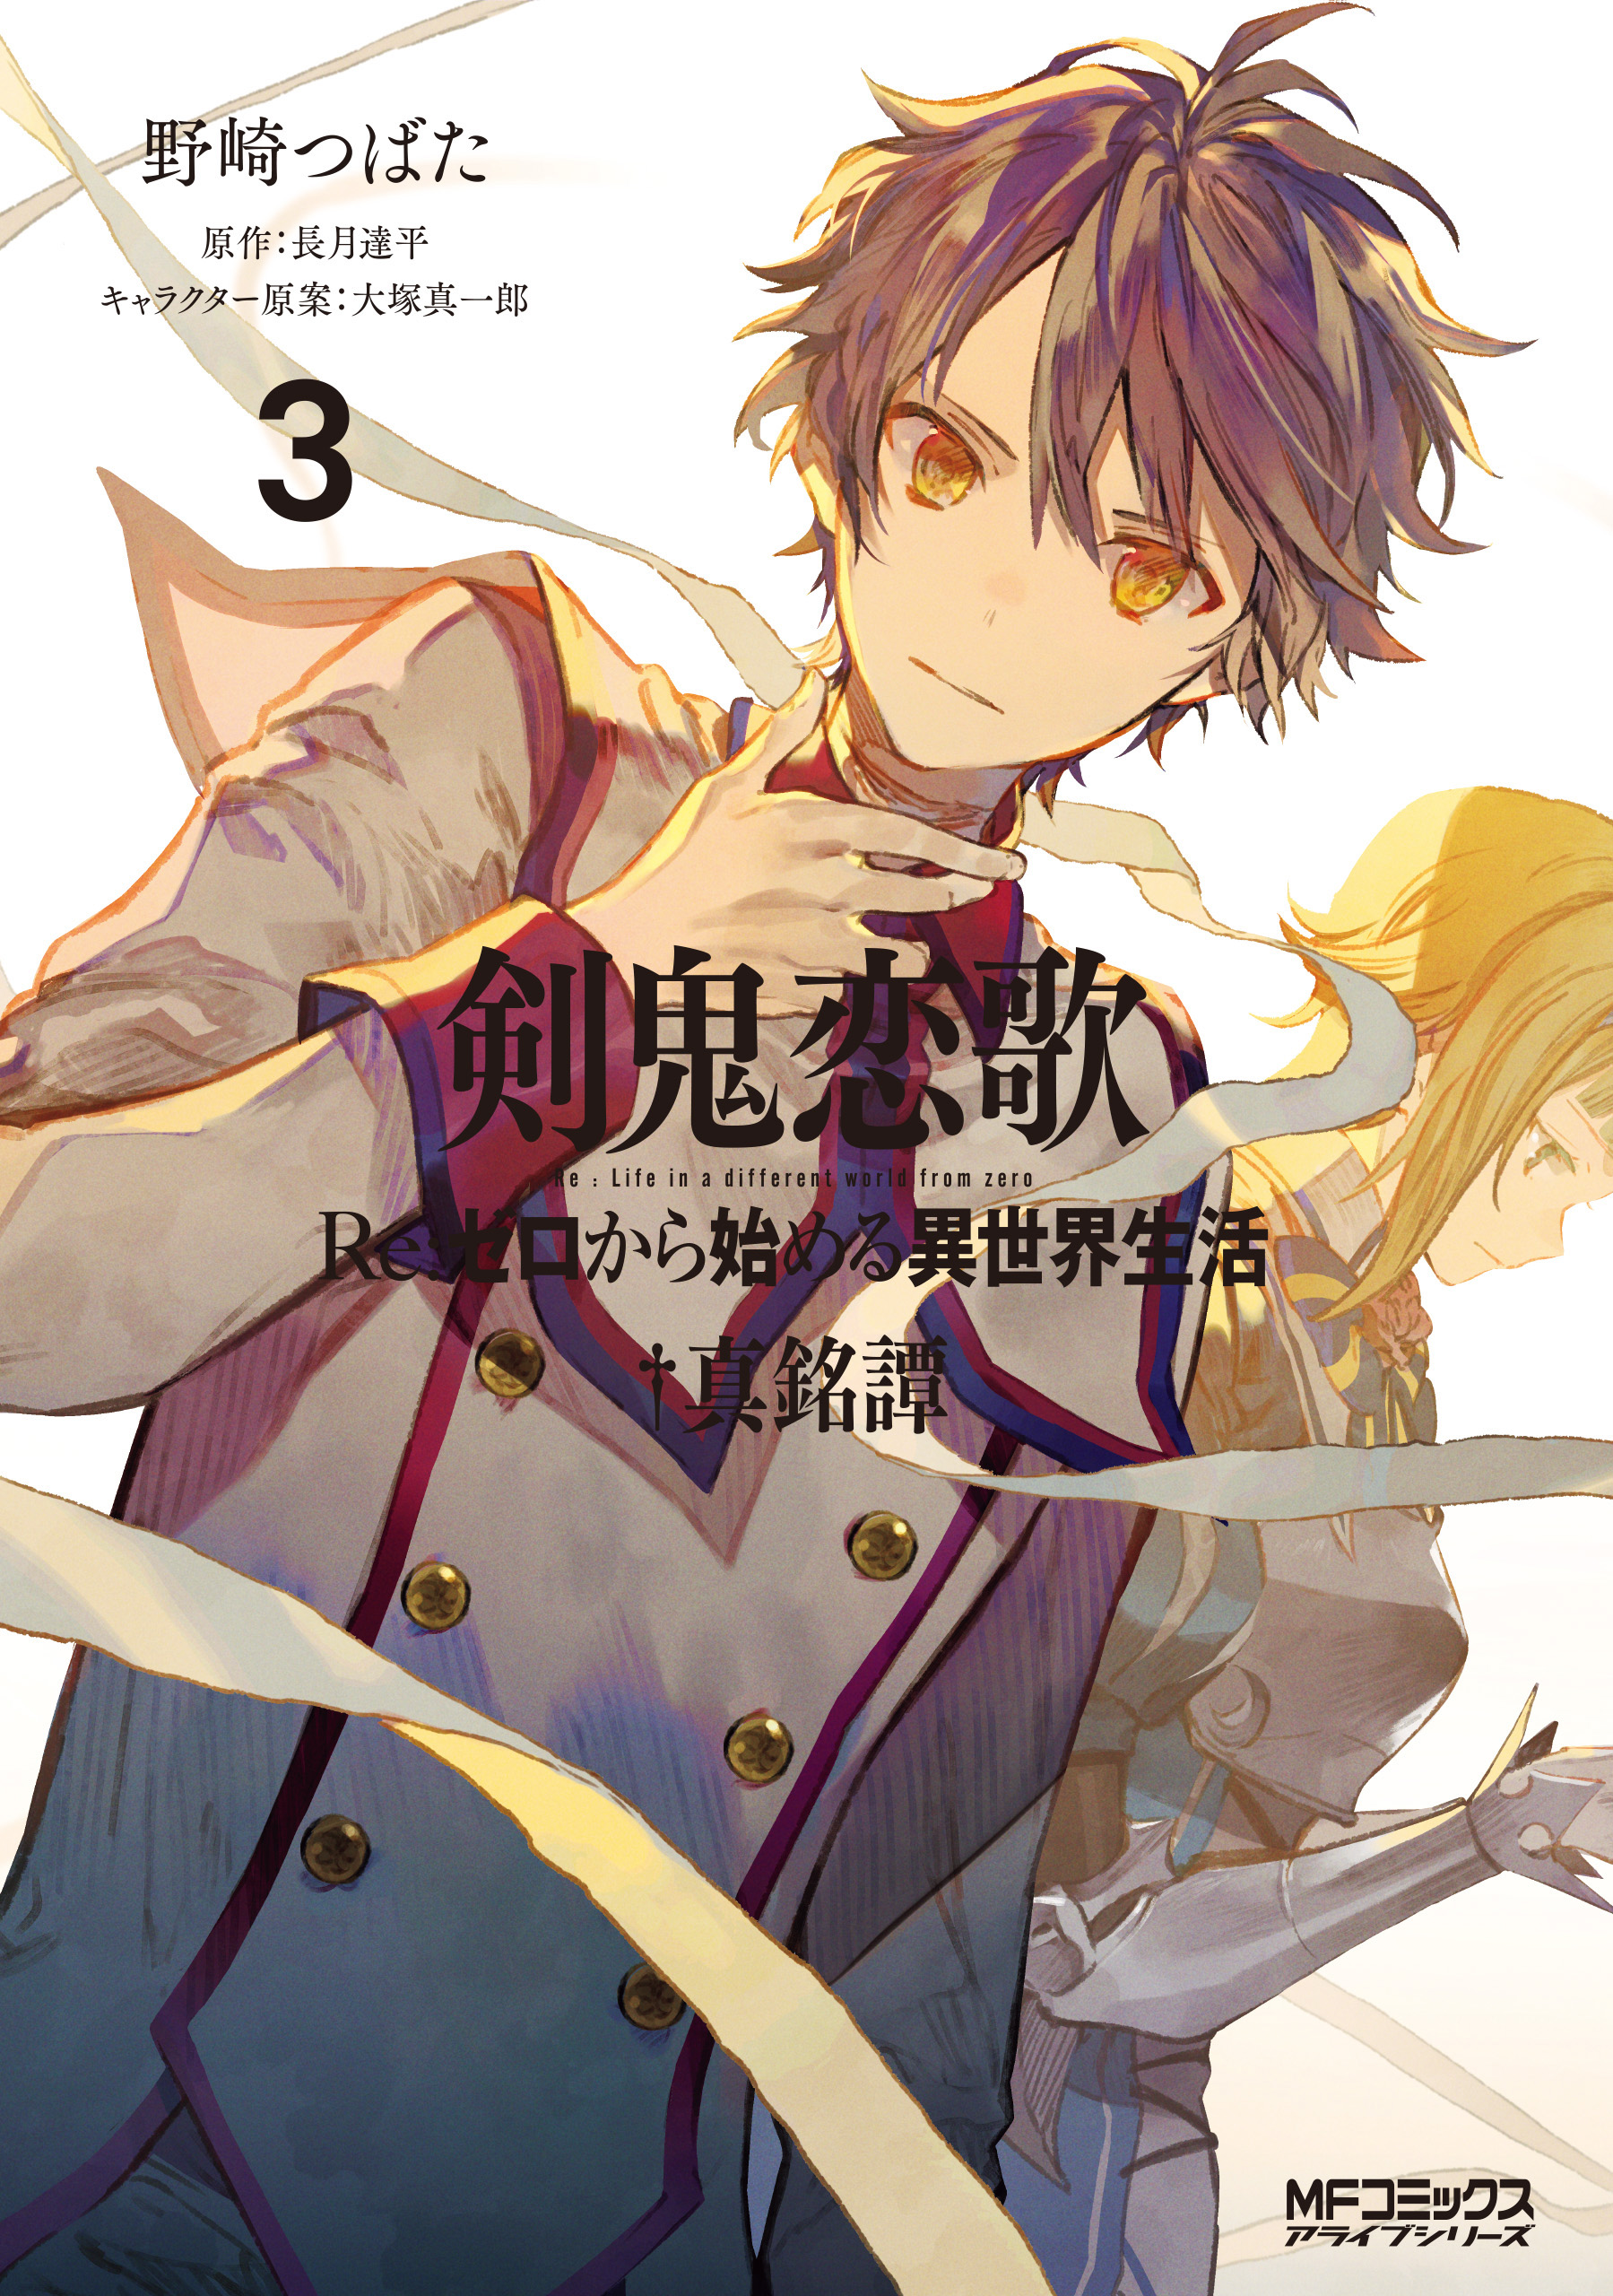 Shinmeitan Manga Volume 3 | Re:Zero Wiki | Fandom